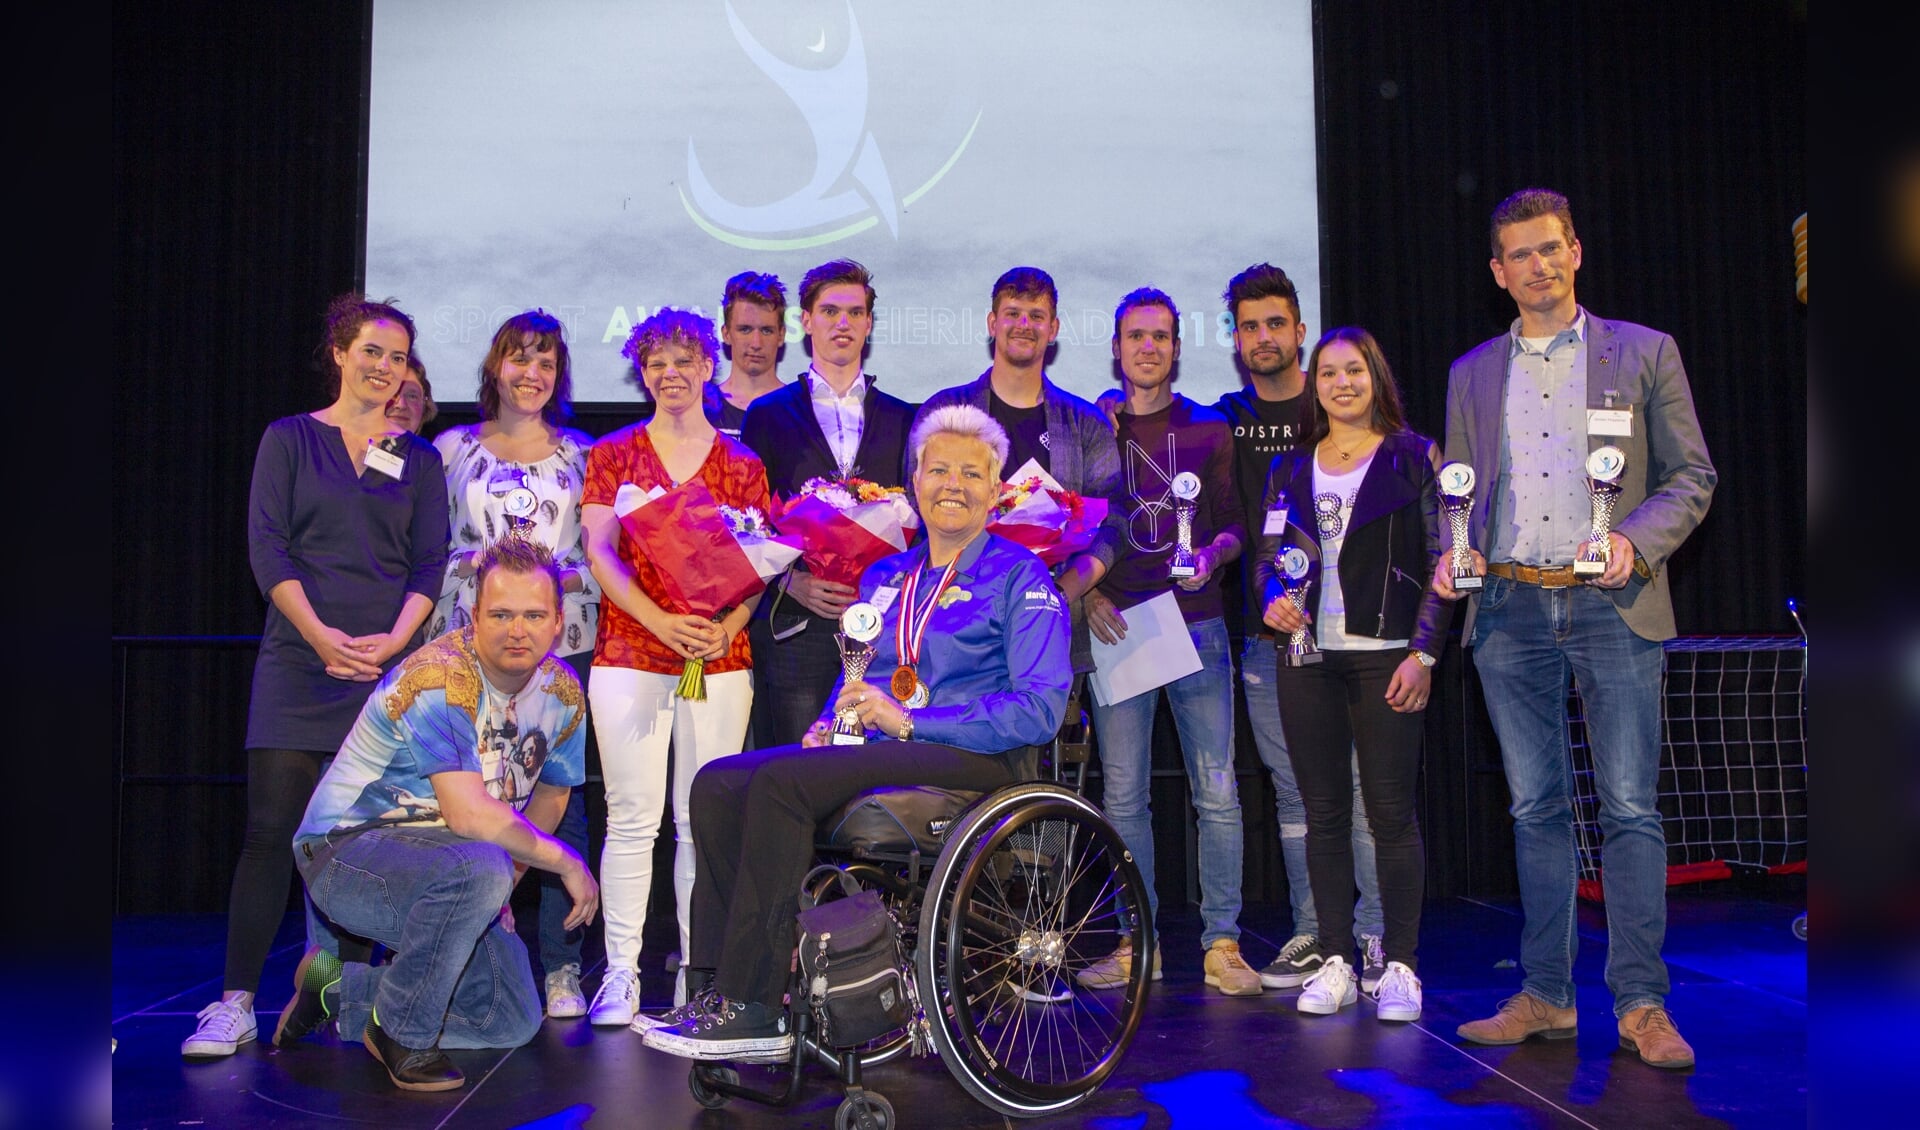 De winnaars van de eerste Sport Awards van Meierijstad (Foto: Ad van de Graaf).